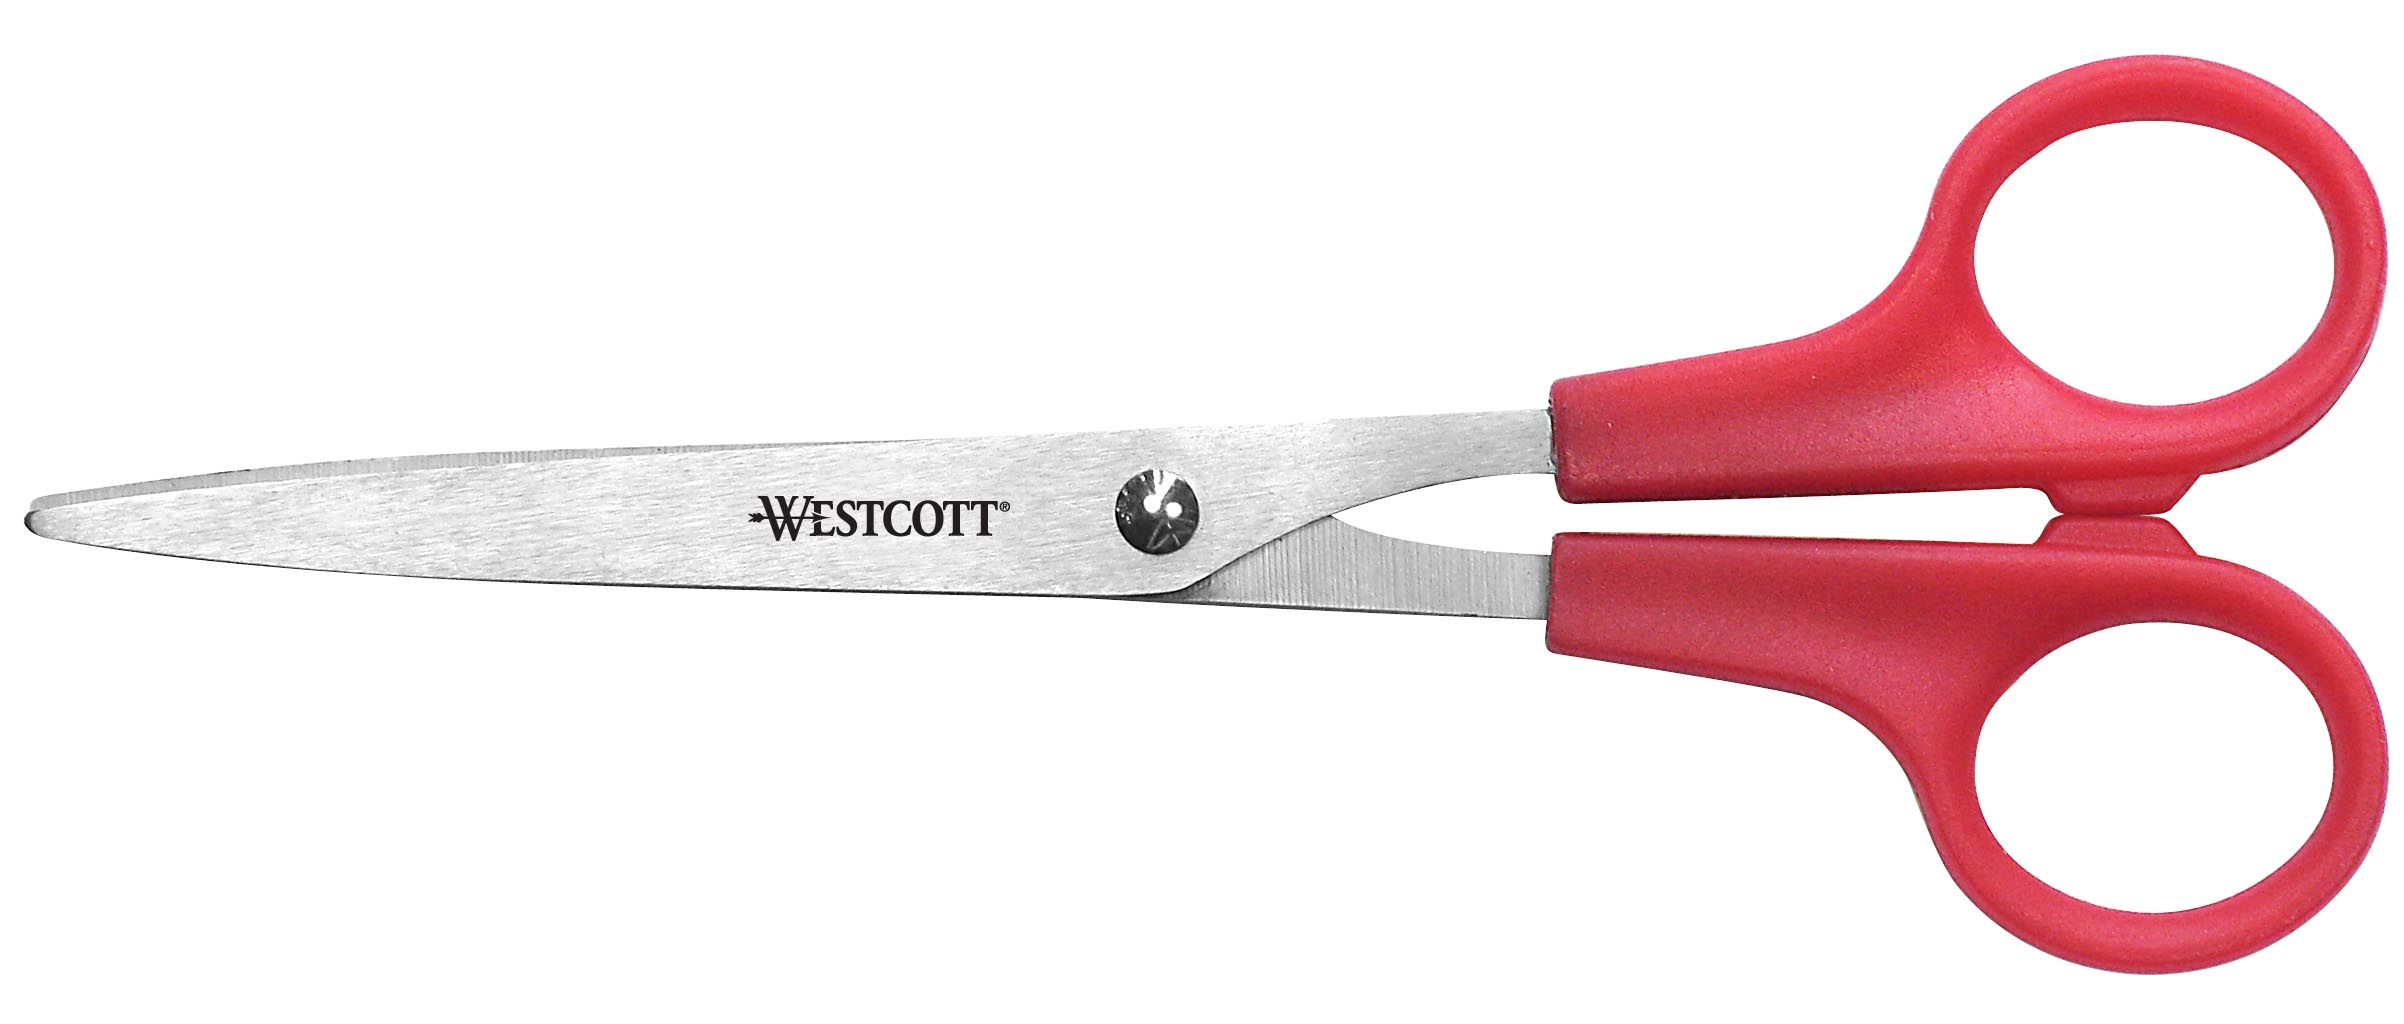 Westcott - Westcott 9.5 Premium Tailor Scissors, Red/Black (17780